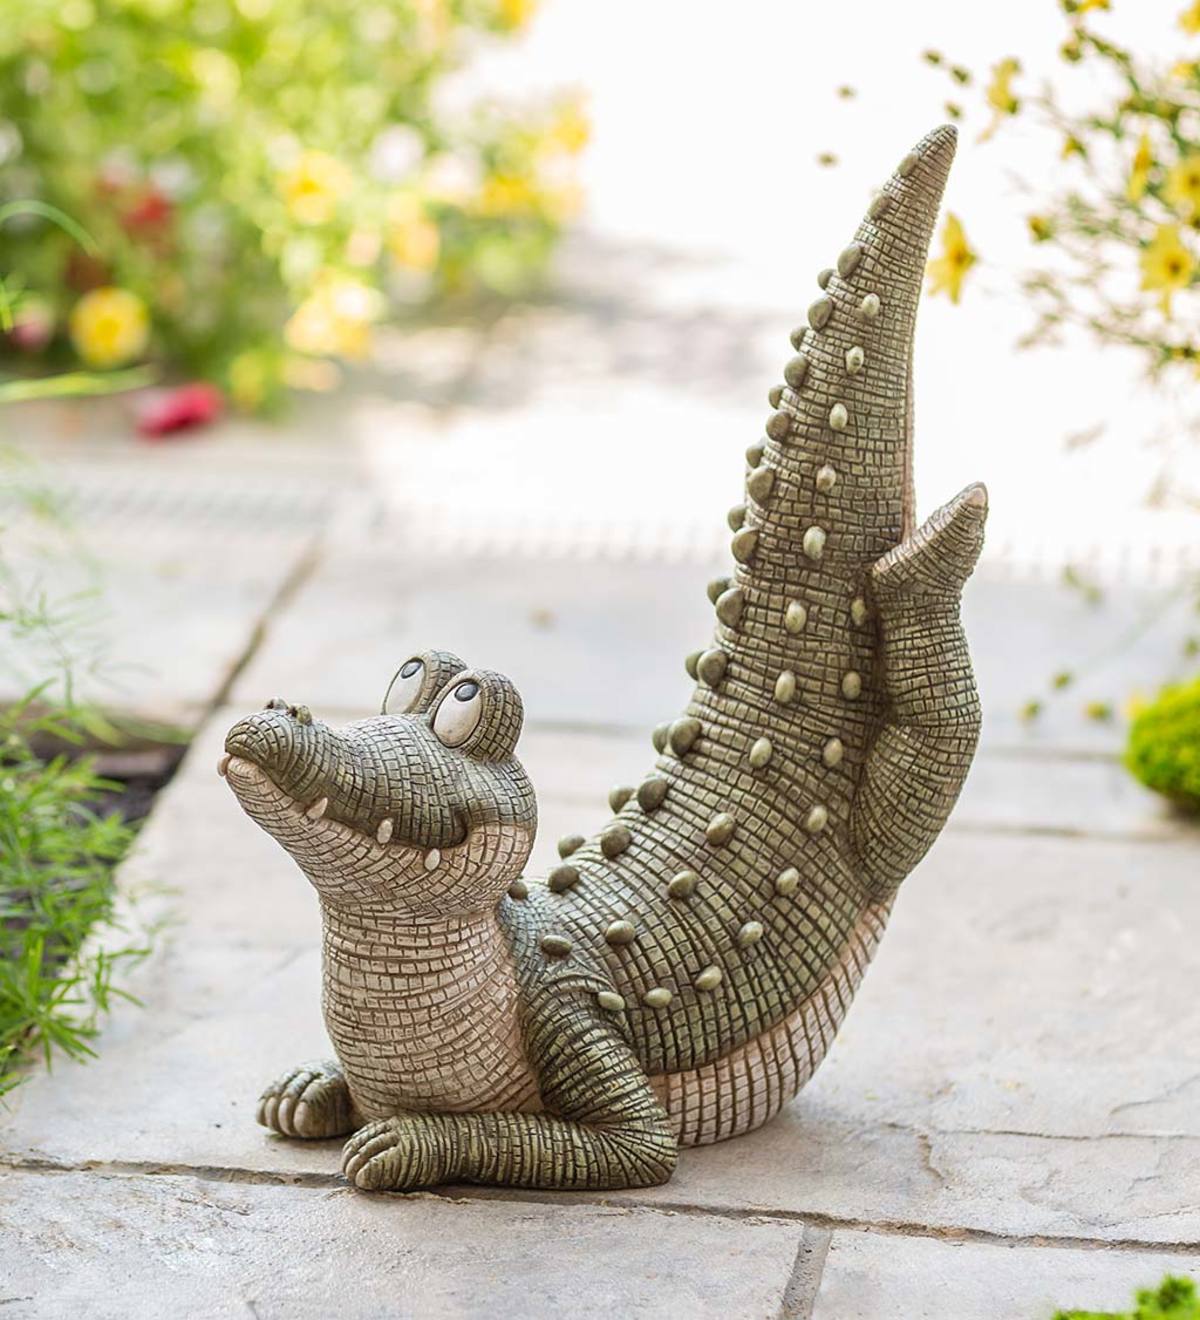 Alligator Crocodile Statue Indoor & Outdoor Garden Decor Sculpture **GREAT GIFT